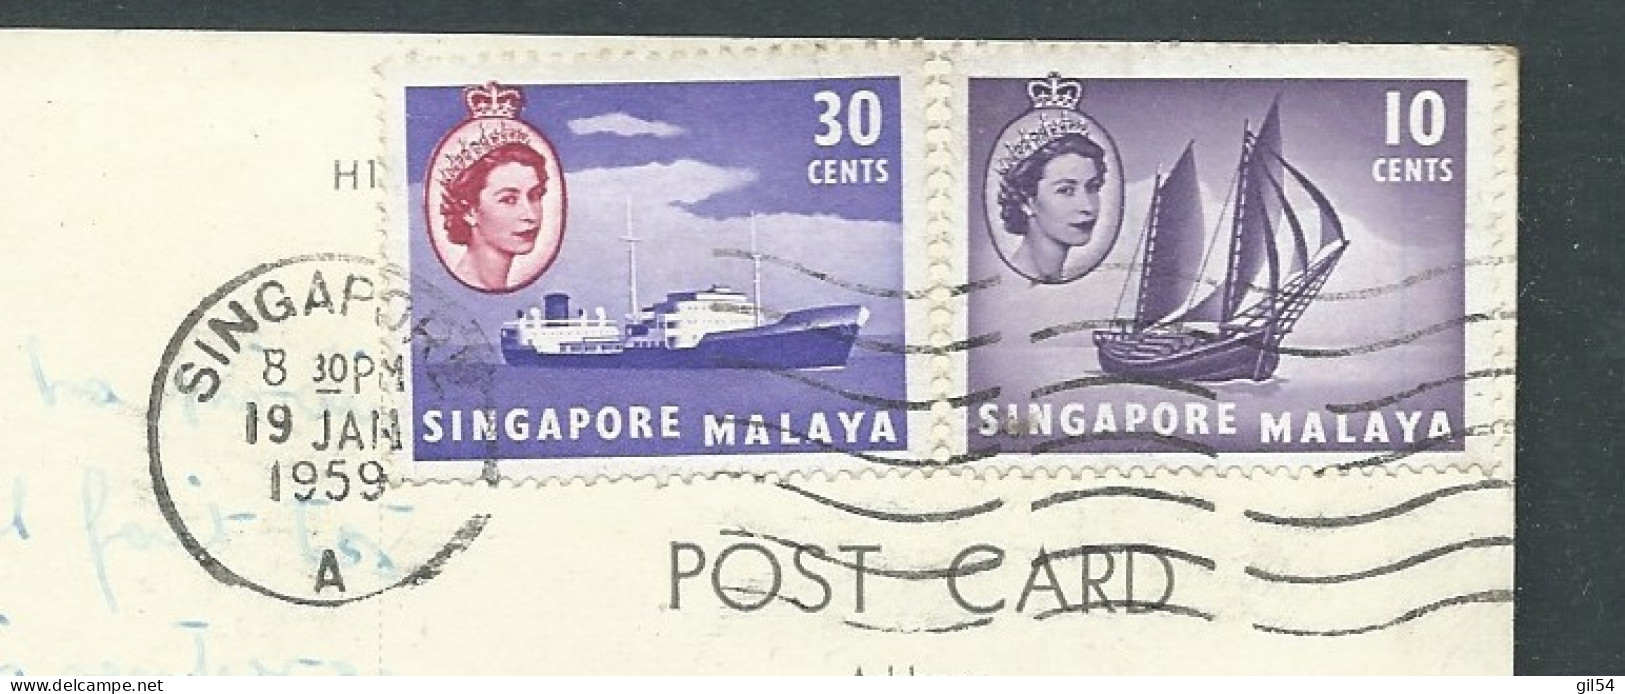 Singapour  - Yvert N° 38 Et 34 Affranchissant 1 Carte Pour La France En Janvier 1959 - FAI 20079 - Singapore (...-1959)